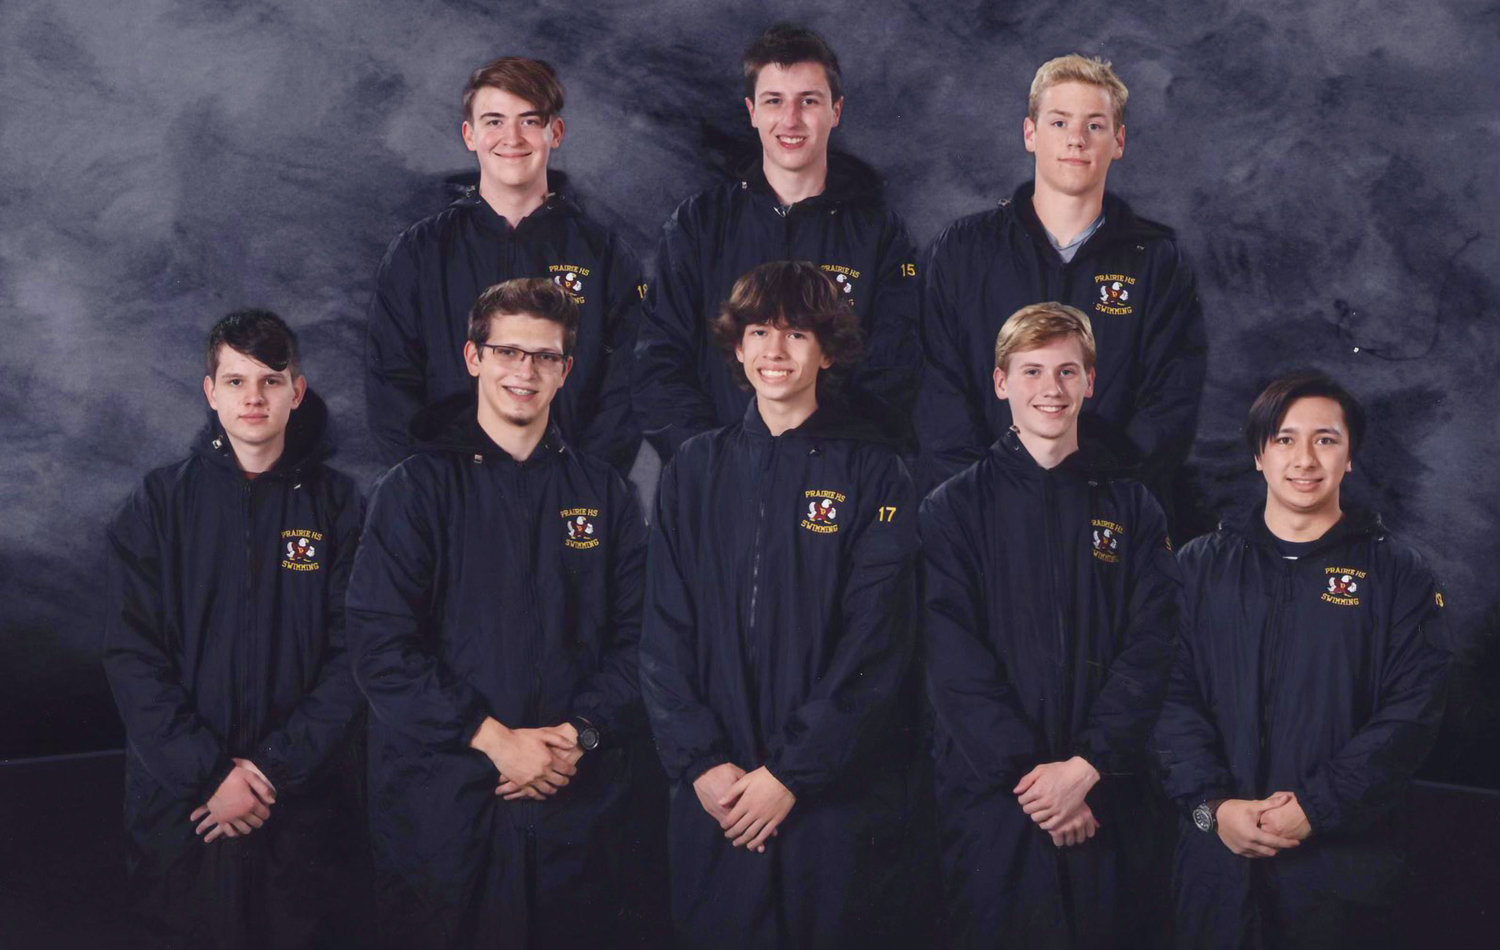 The Prairie High School swim team.